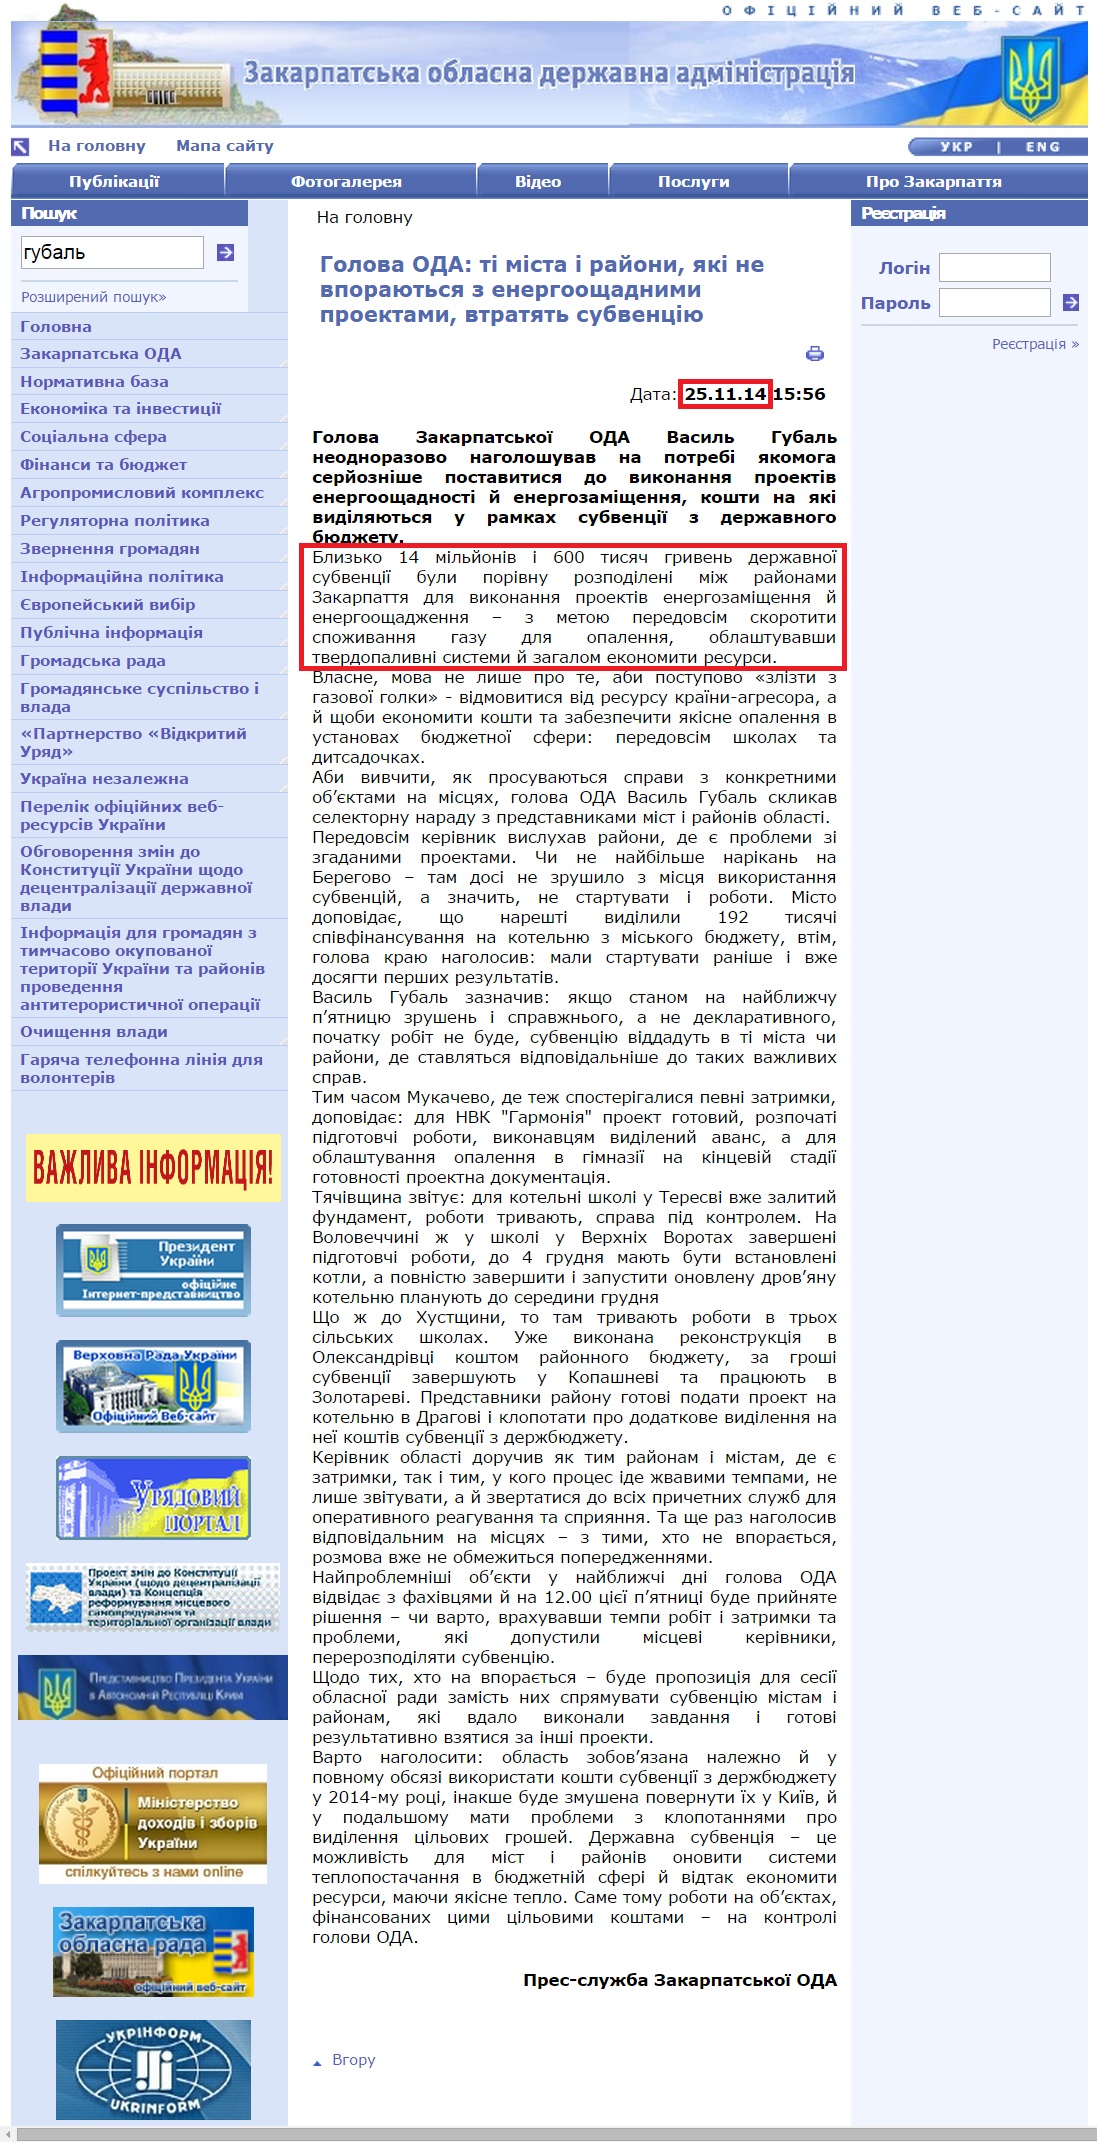 http://www.carpathia.gov.ua/ua/publication/content/10373.htm?lightWords=%D0%B3%D1%83%D0%B1%D0%B0%D0%BB%D1%8C